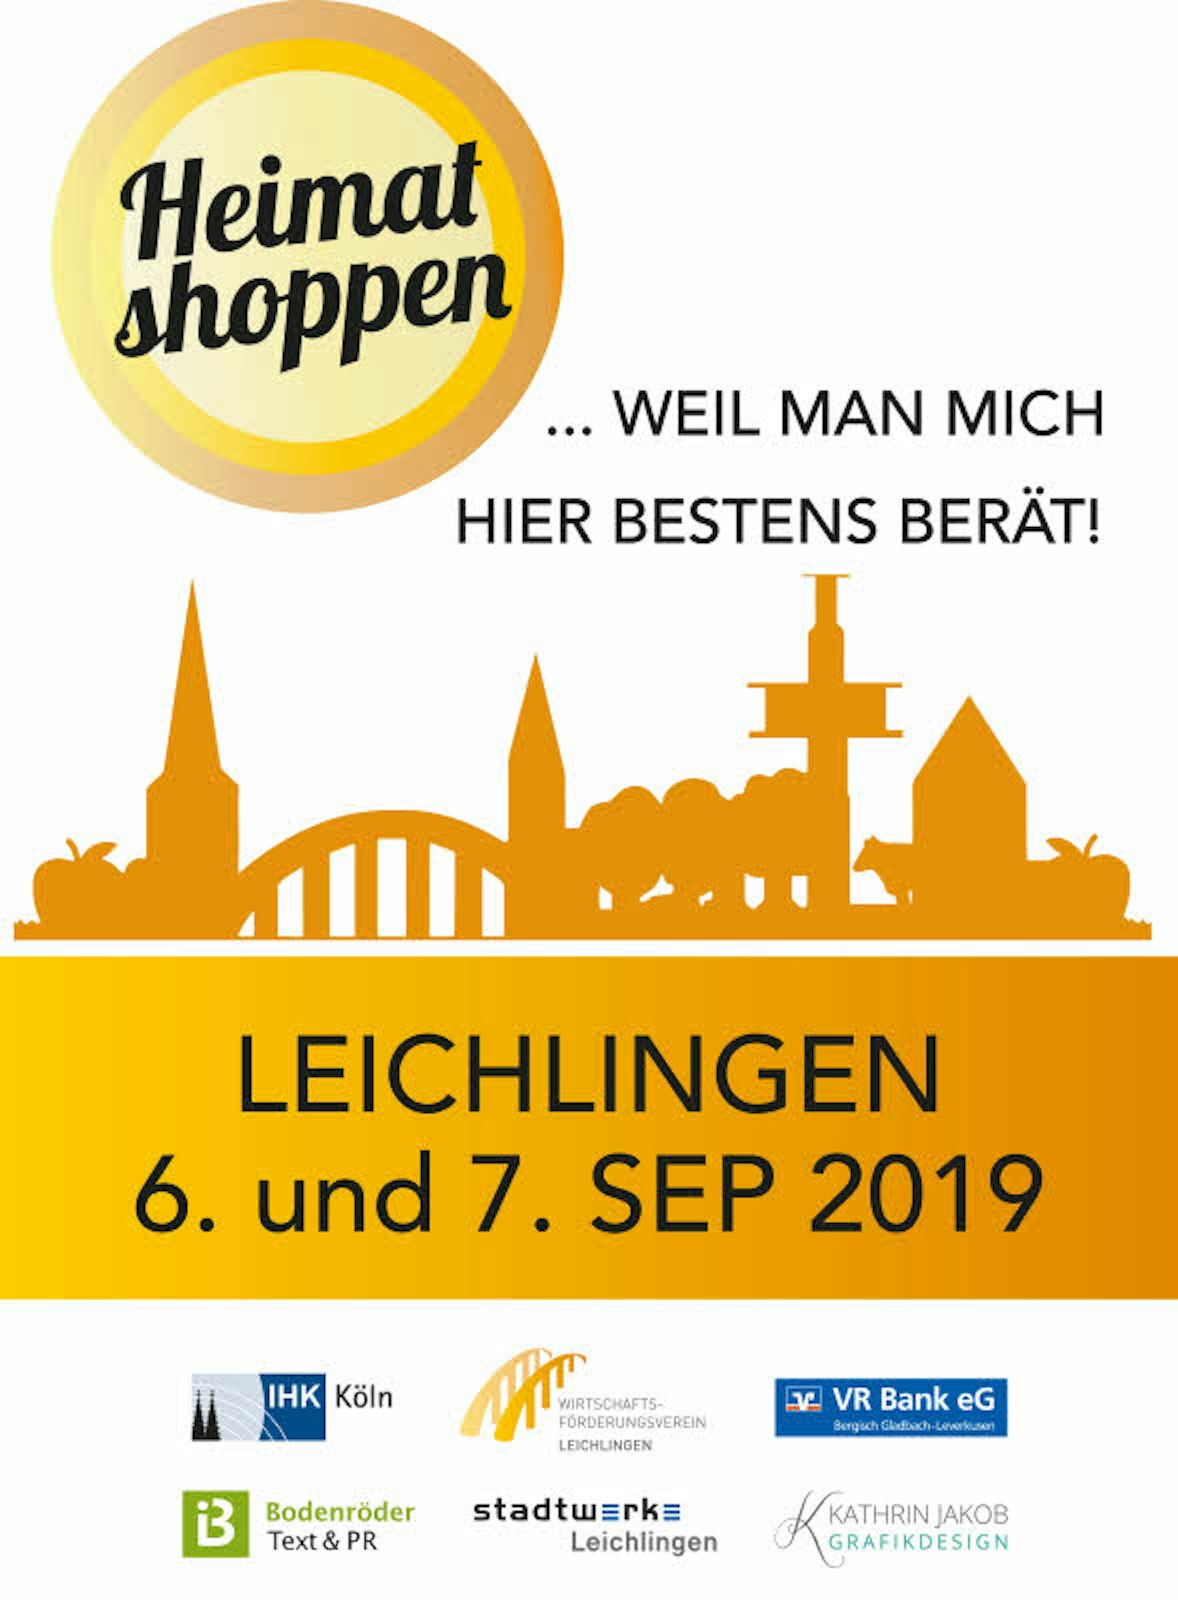 Das Logo zur Leichlinger Aktion „Heimat shoppen“ wird auf 3000 Papiertaschen, Poster und Aufkleber gedruckt.